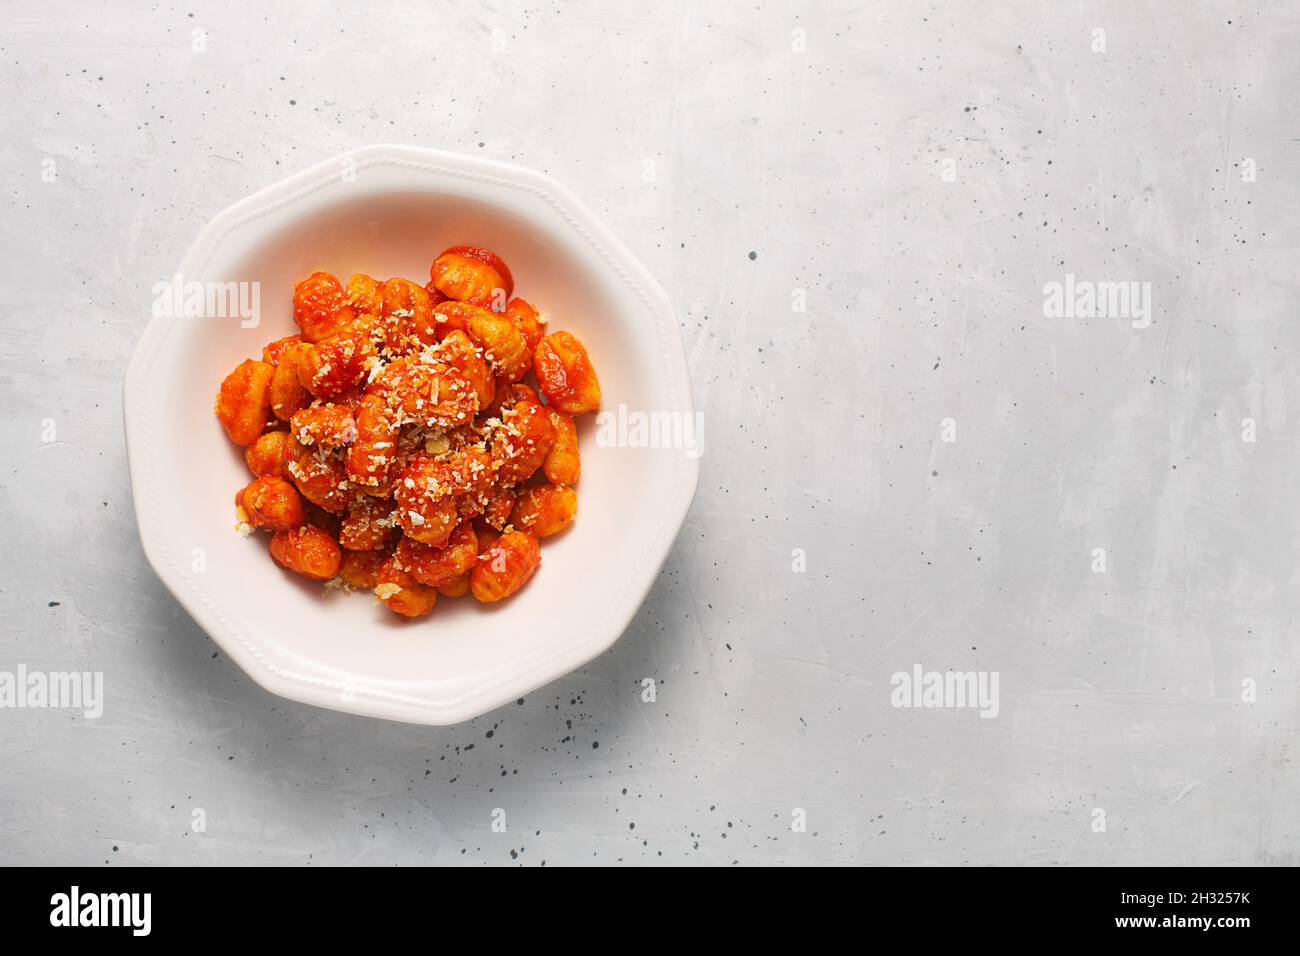 Gnocchi tradizionali con salsa di pomodoro e formaggio in un piatto bianco con spazio di copia. Gli gnocchi sono gnocchi, solitamente ovali. Gnocchi di patate sono popolari in Foto Stock